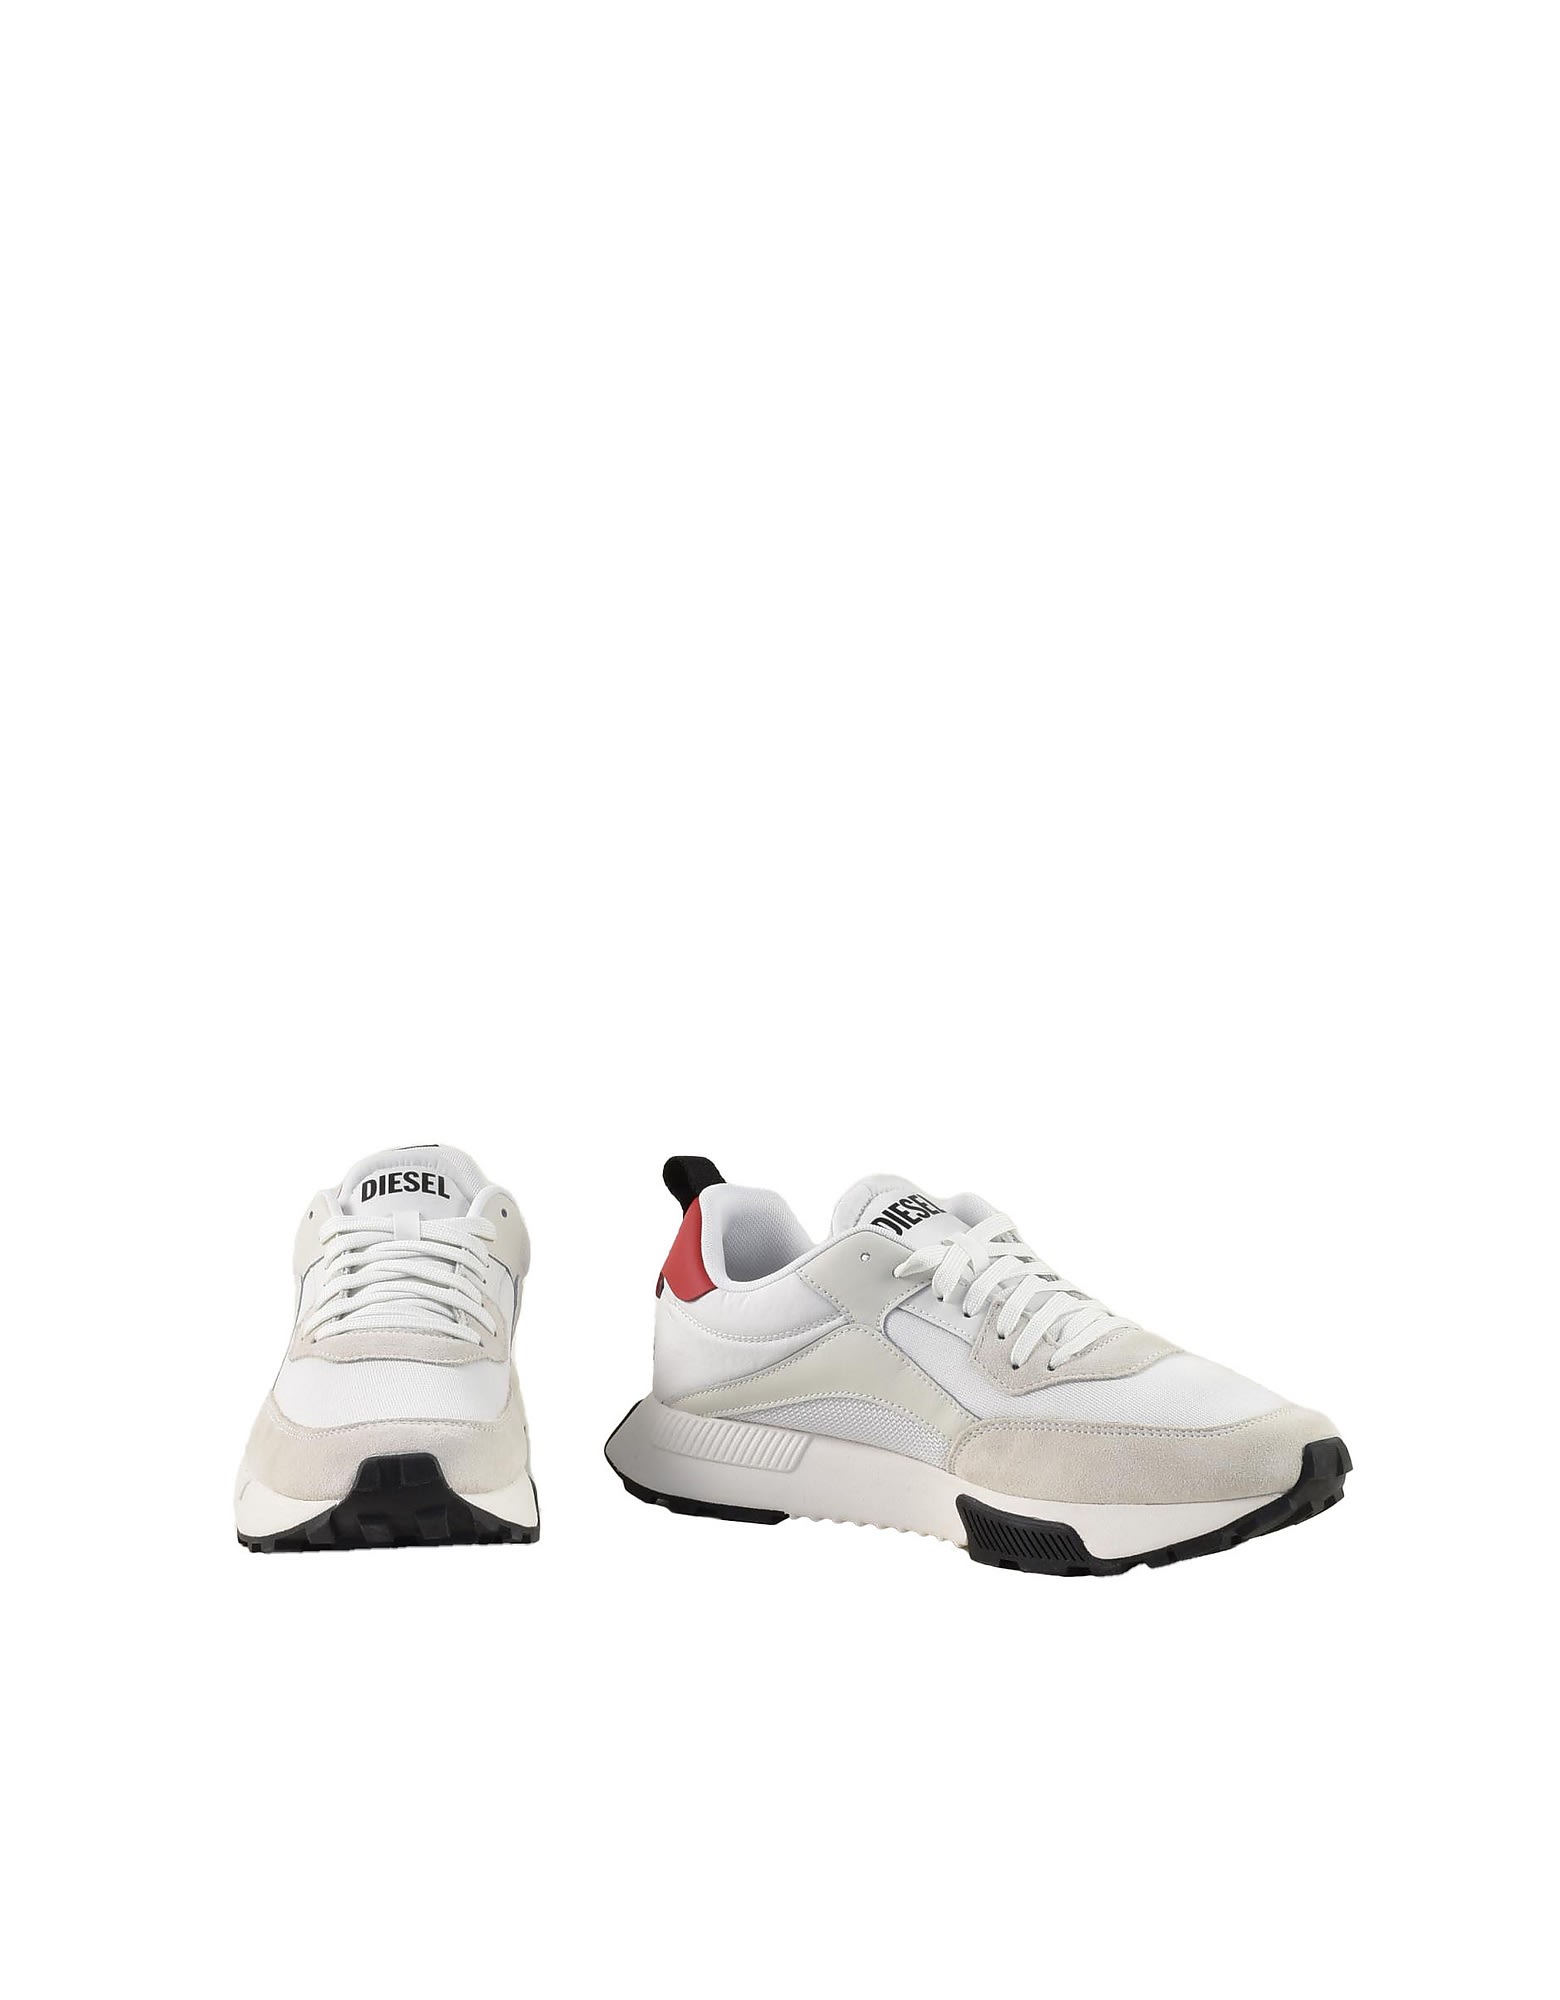 Diesel Mens White / Red Sneakers